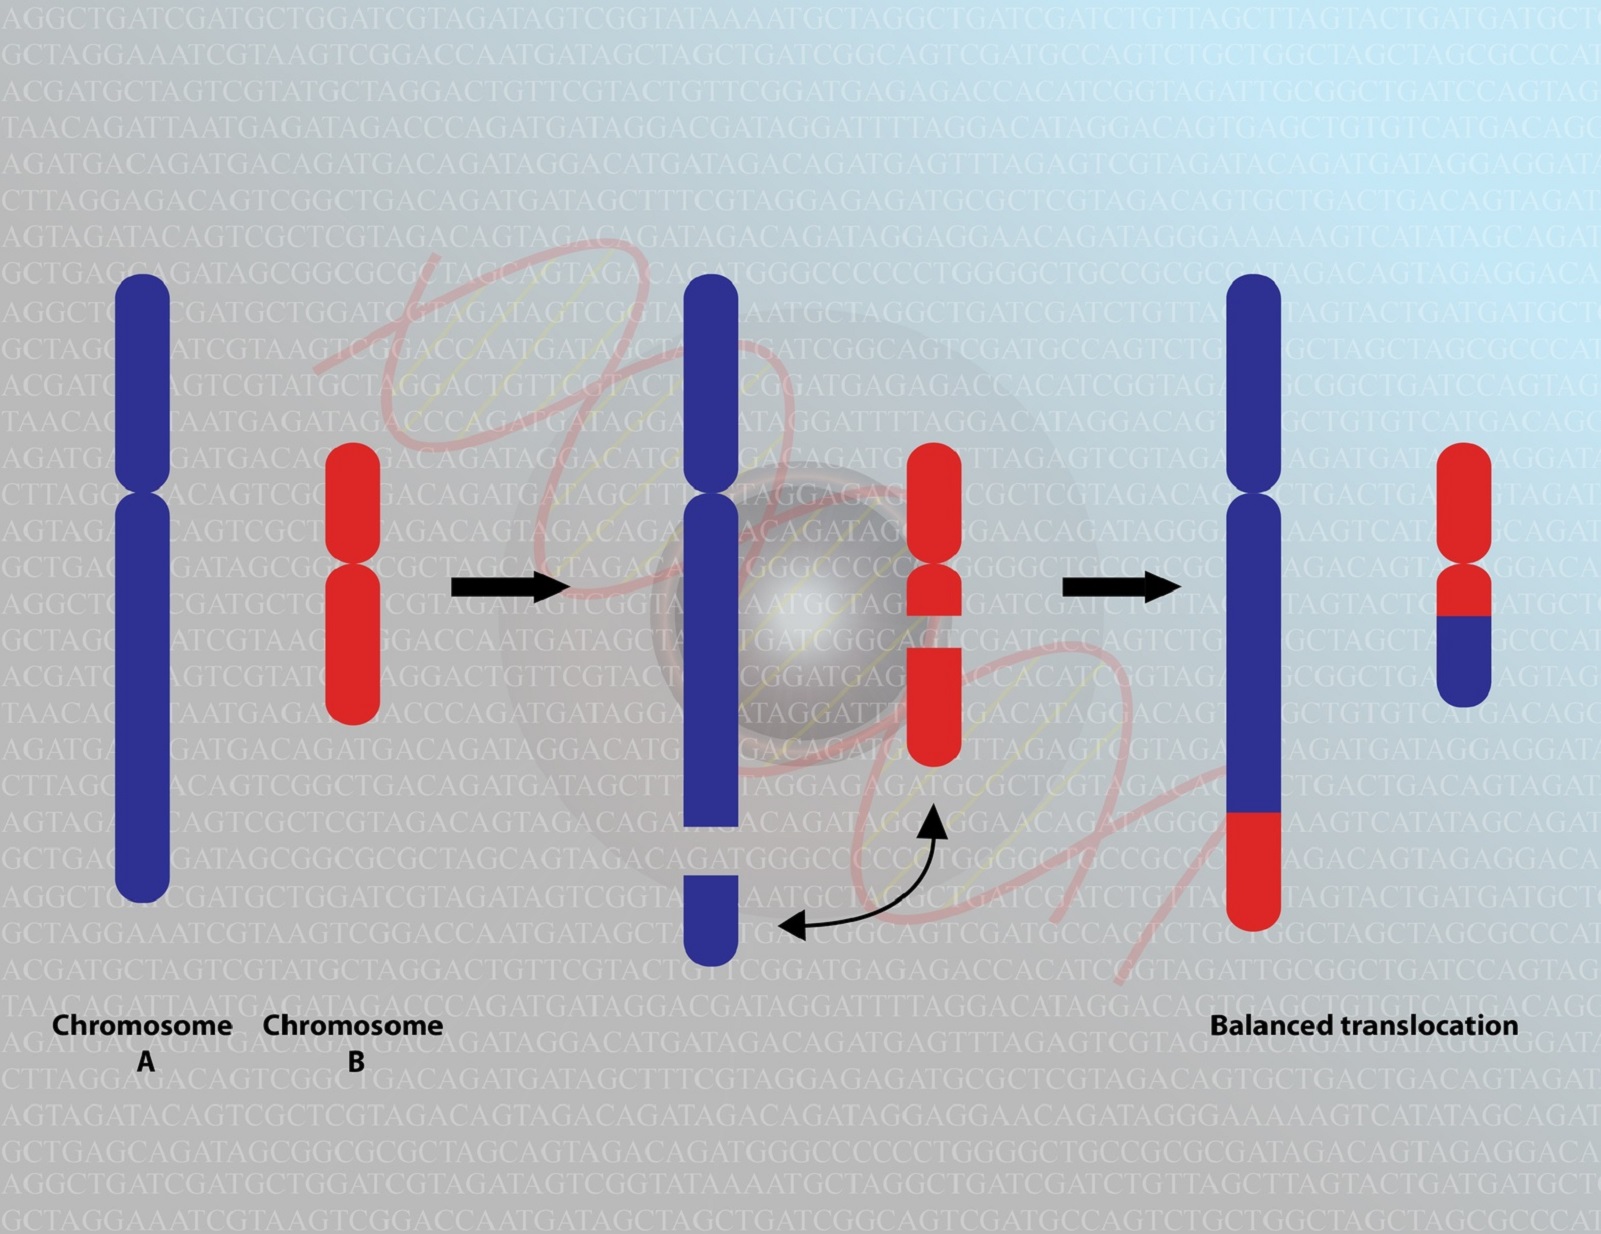 Une translocation réciproque entre chromosomes non homologues conduit à un échange de matériel génétique. © meletver, Fotolia